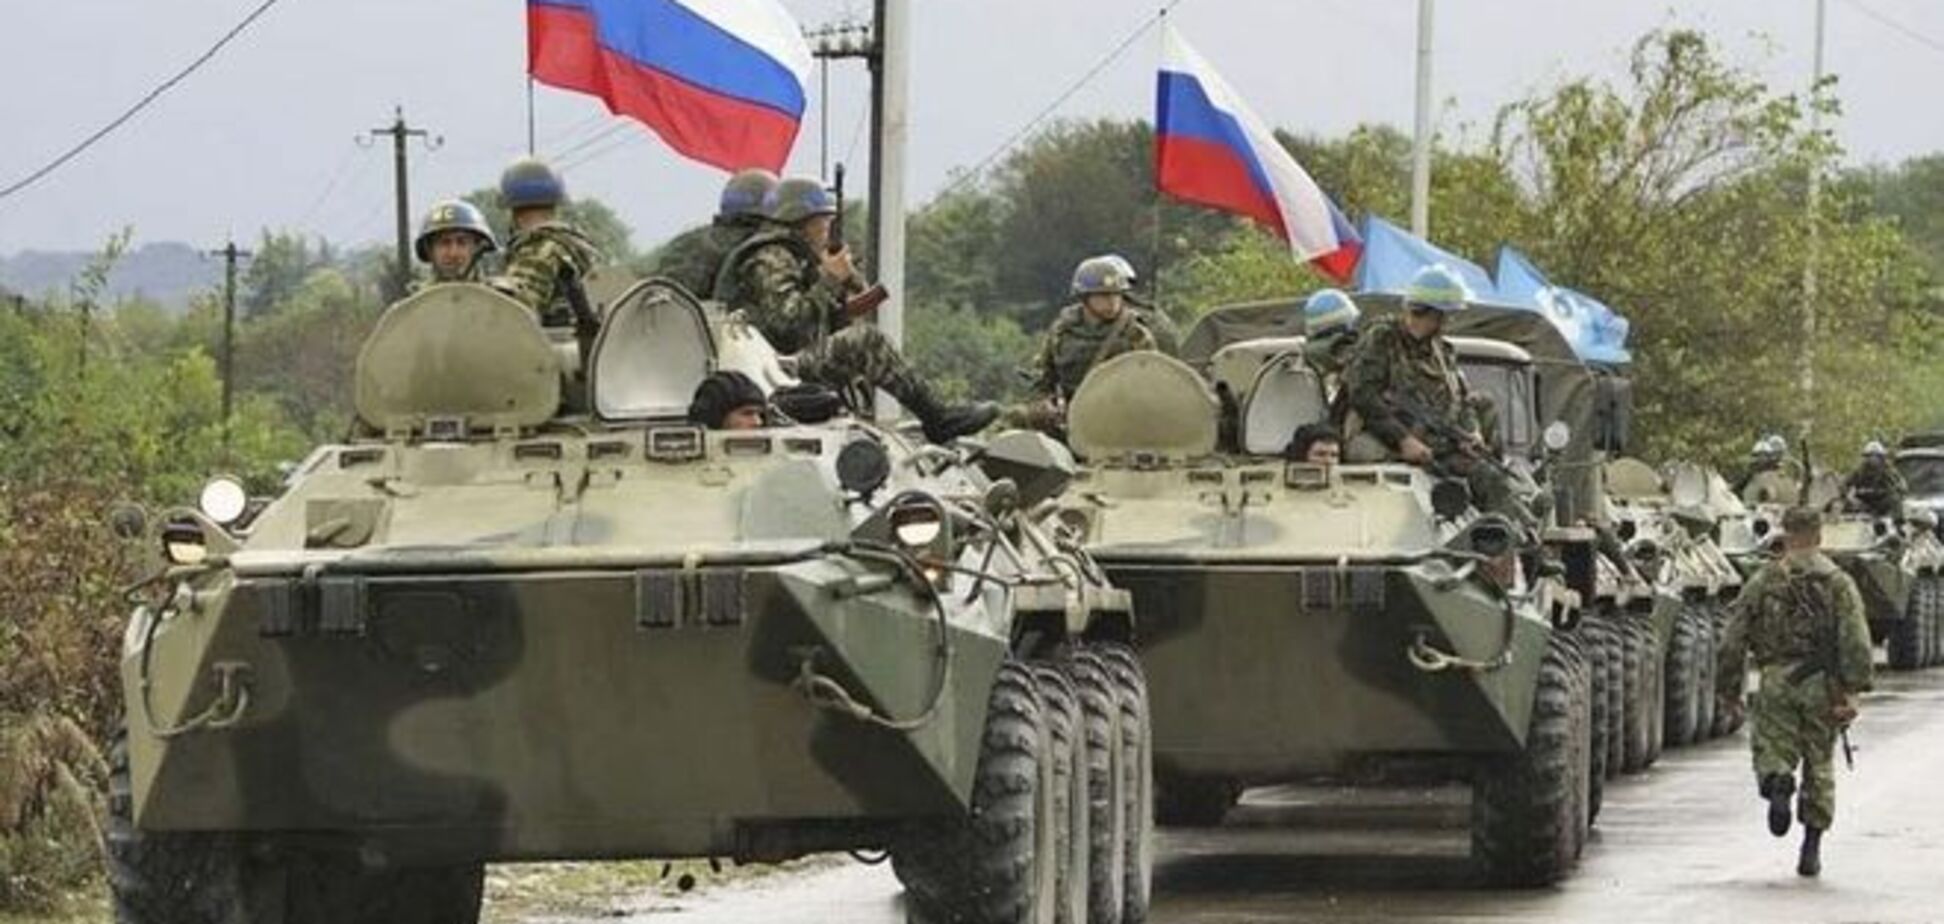 Больше половины россиян не видят своих солдат в Украине - опрос